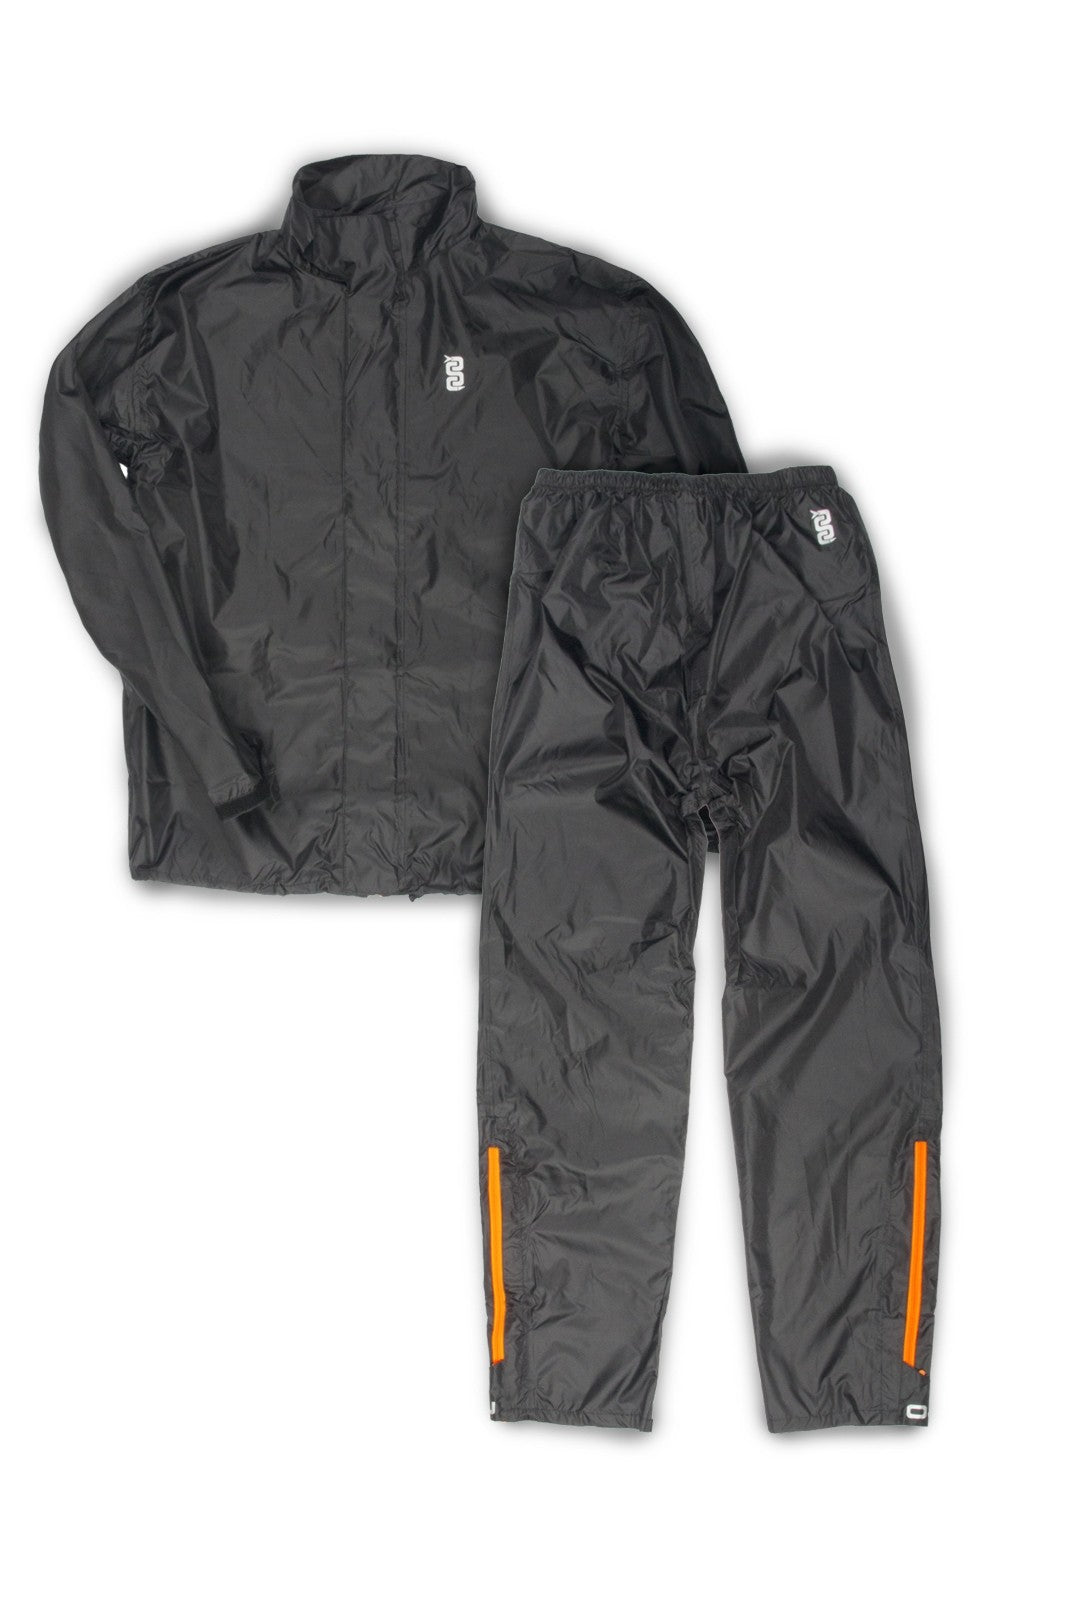 Antipioggia moto OJ SYSTEM SET NERO leggero compatto giacca e pantaloni